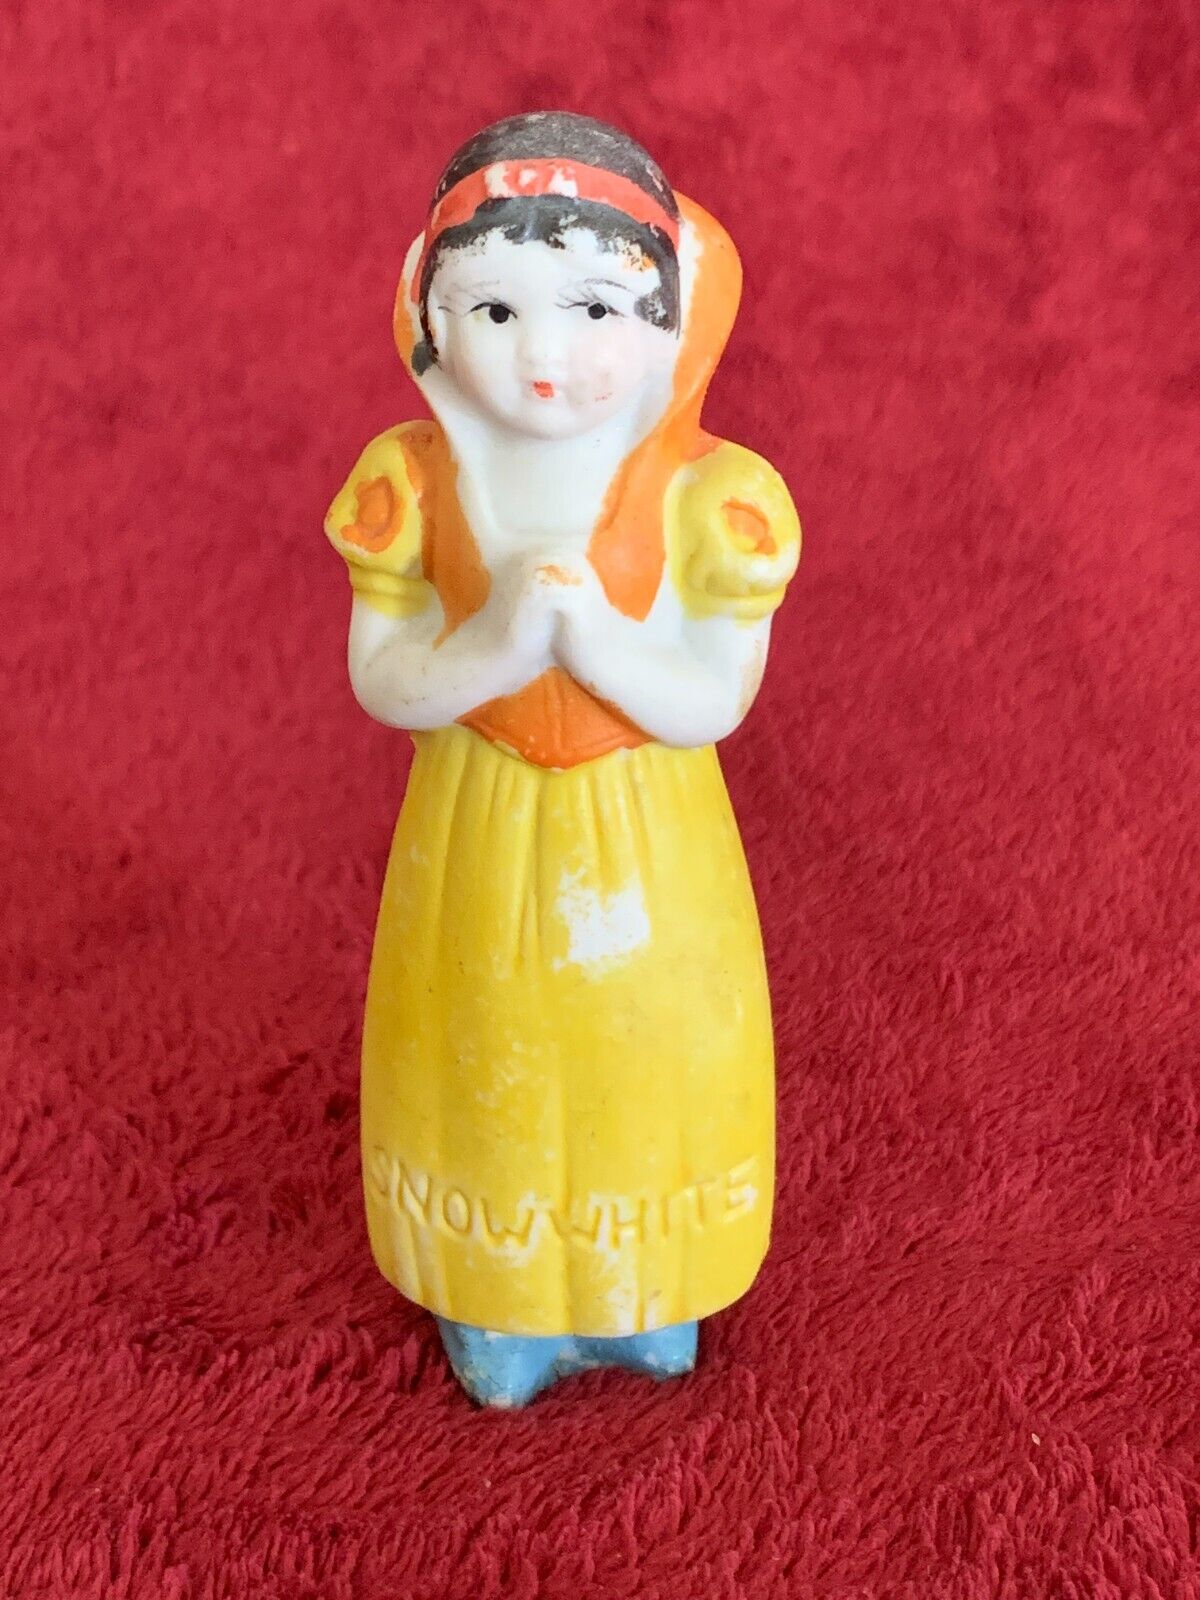 Antique Bisque Walt Disney Snow White from SW & Seven Dwarfs Figurine from 1930s